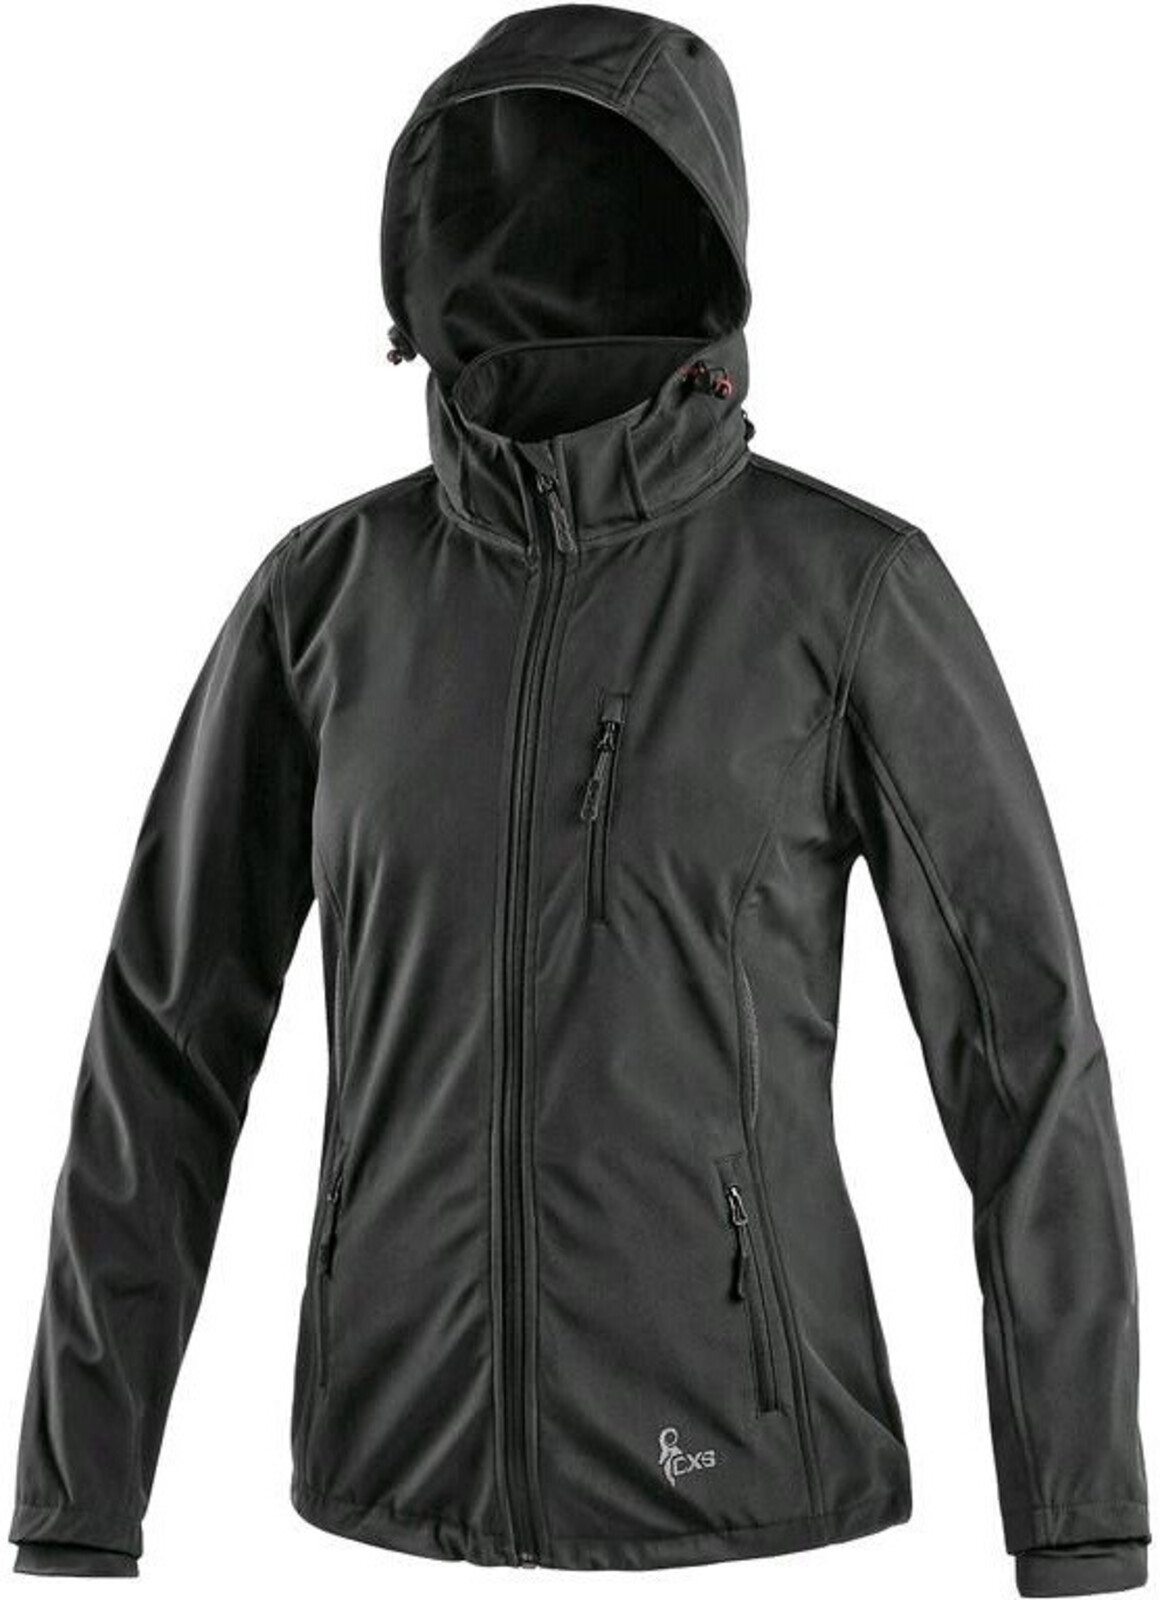 Dámska softshellová bunda CXS Digby - veľkosť: 3XL, farba: čierna